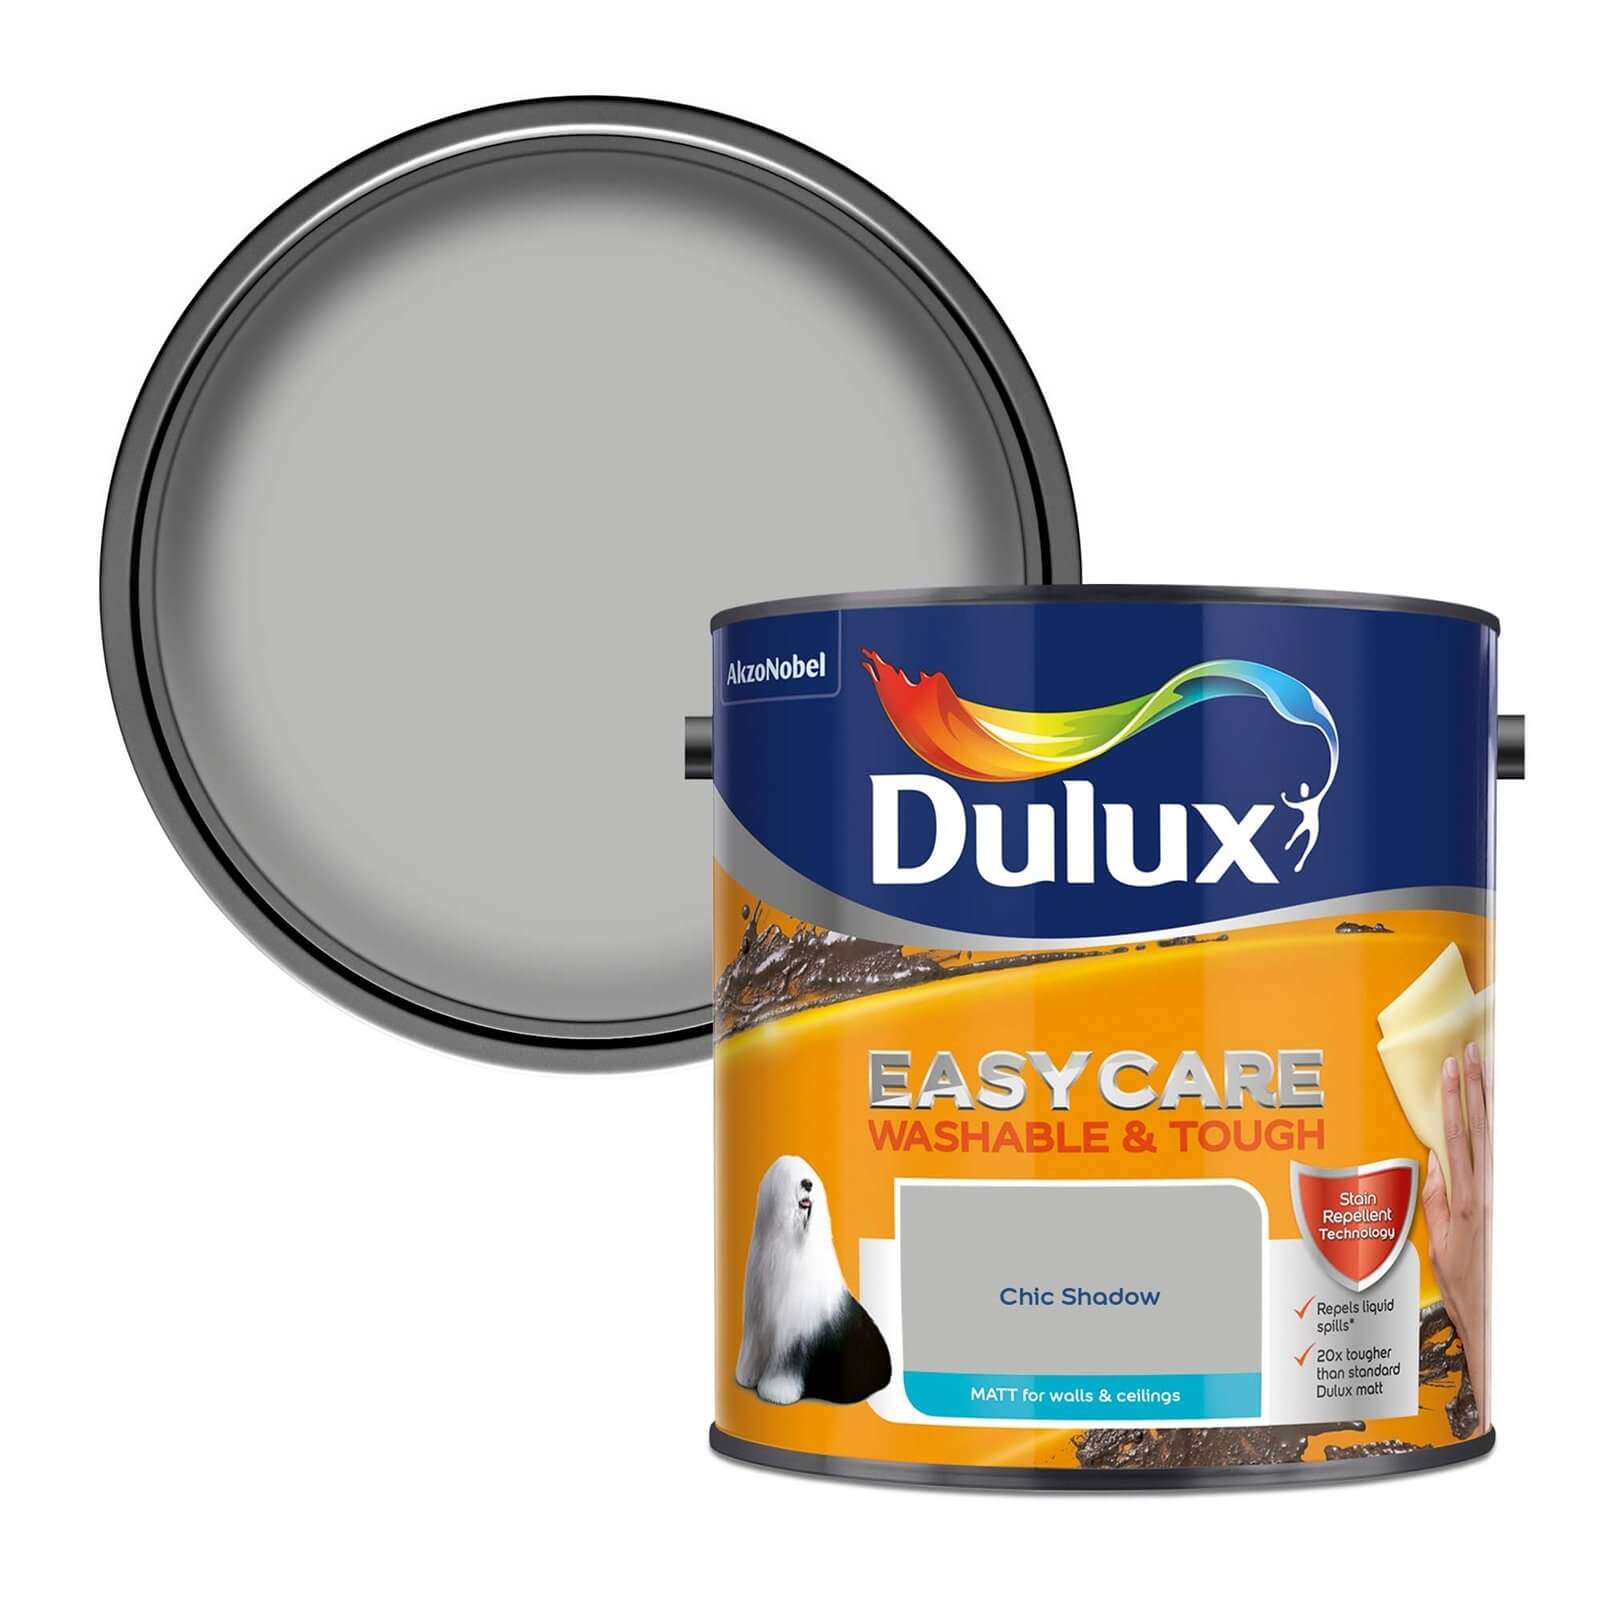 Dulux Easycare Washable & Tough Matt Paint Chic Shadow - 2.5L